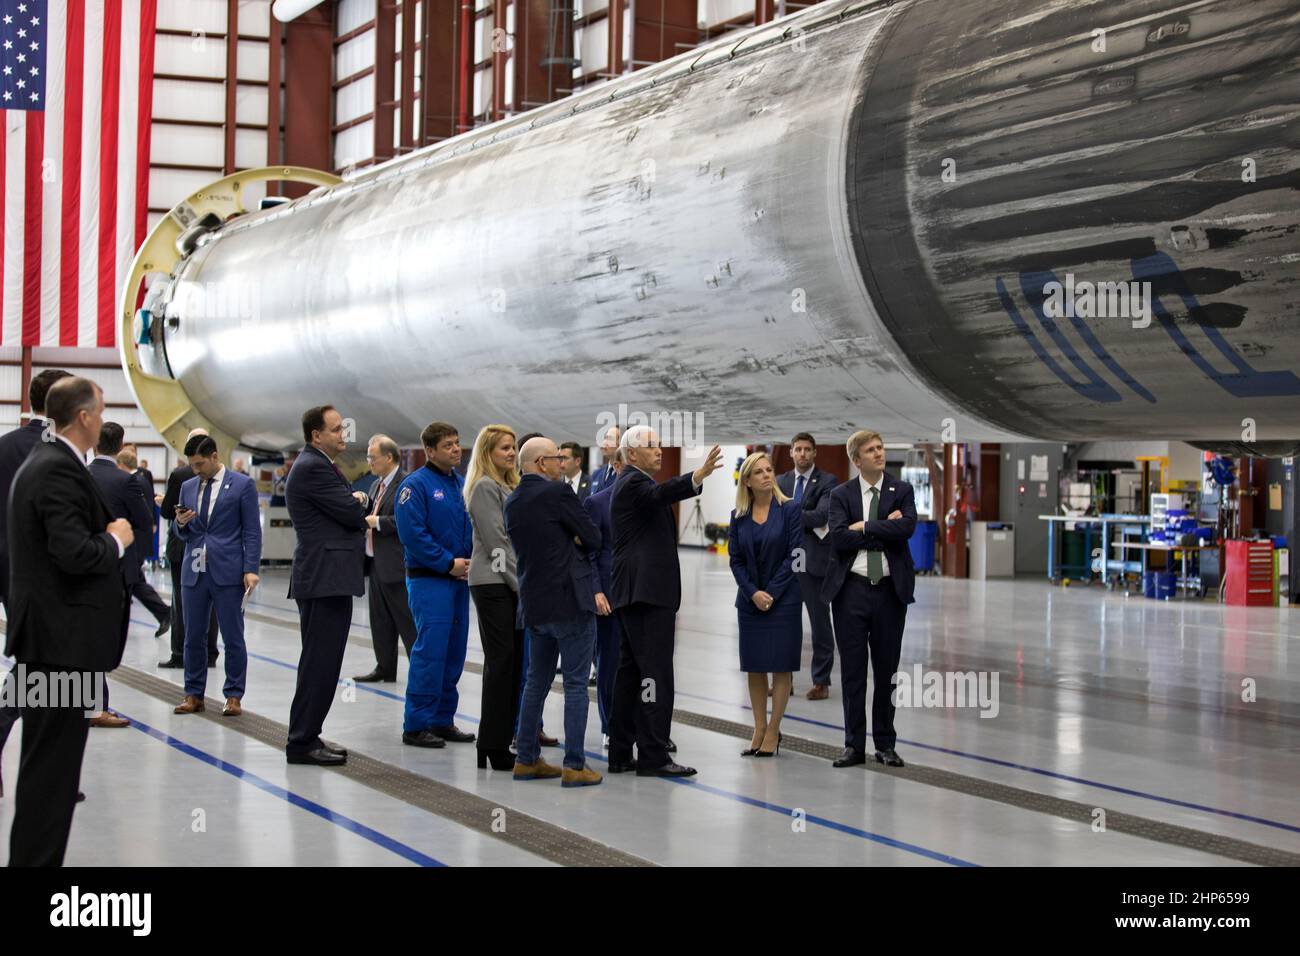 Le vice-président Mike Pence, pointant, visite le hangar SpaceX au Launch Complex 39A, au Kennedy Space Center de la NASA, en Floride, le 21 février 2018. Le groupe est en train d'examiner de près une fusée Falcon 9 déjà volée. Au cours de sa visite, Pence a présidé une réunion du Conseil national de l'espace dans la grande baie de l'installation de traitement de la station spatiale du centre. Le rôle du conseil est de conseiller le président au sujet de la politique et de la stratégie spatiales nationales et d'examiner les objectifs à long terme du pays en matière d'activités spatiales. Banque D'Images